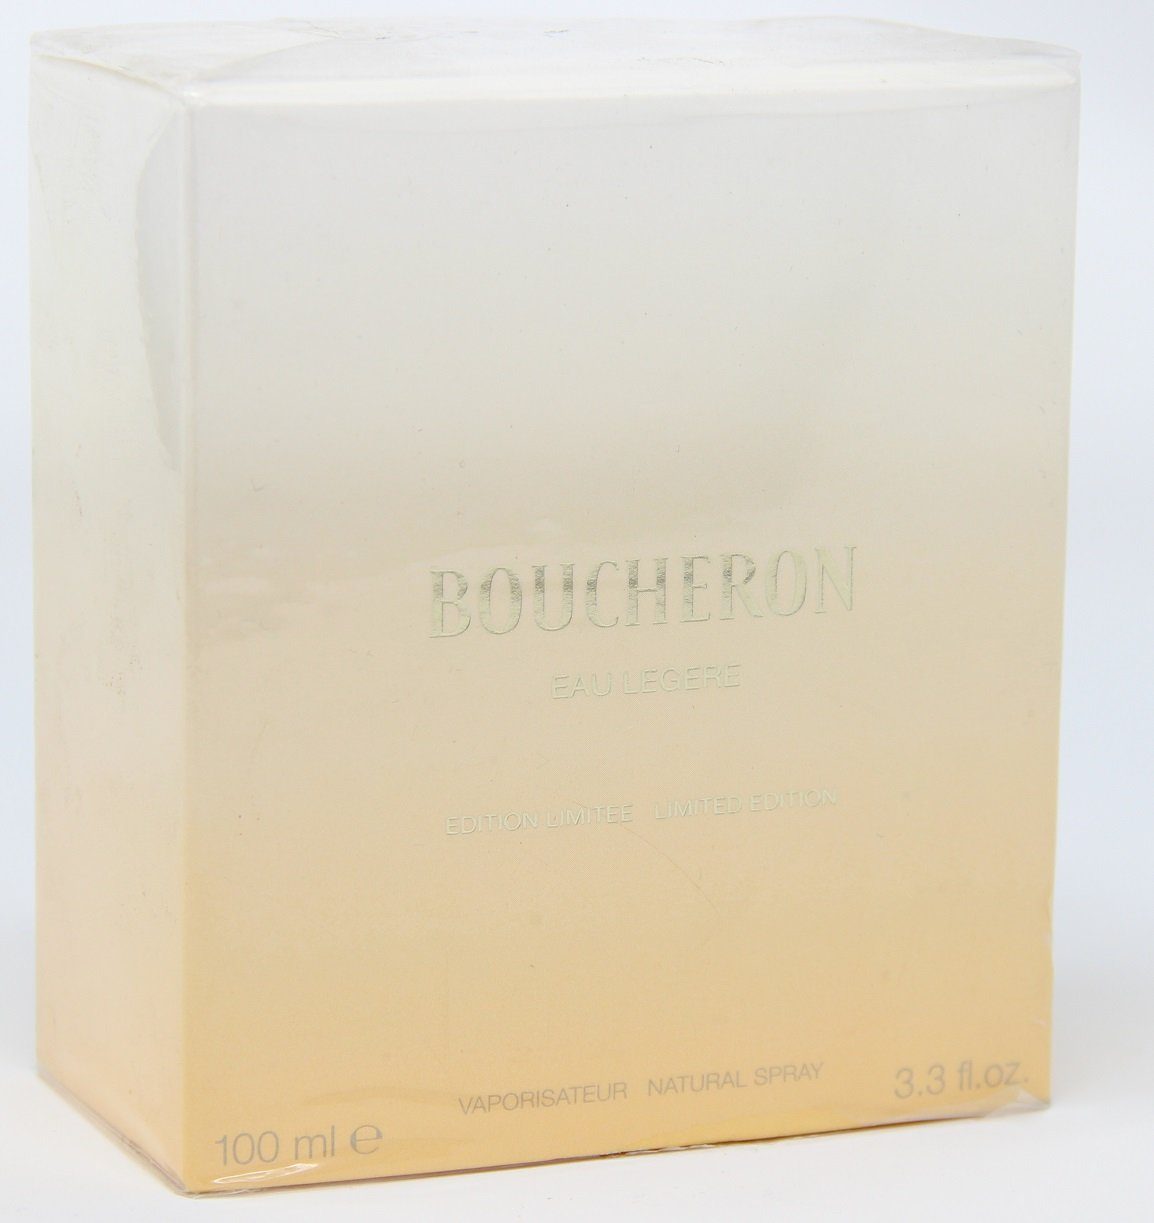 BOUCHERON Eau de Parfum Boucheron Eau Legere Limited Edition Natural Spray 100ml | Eau de Parfum